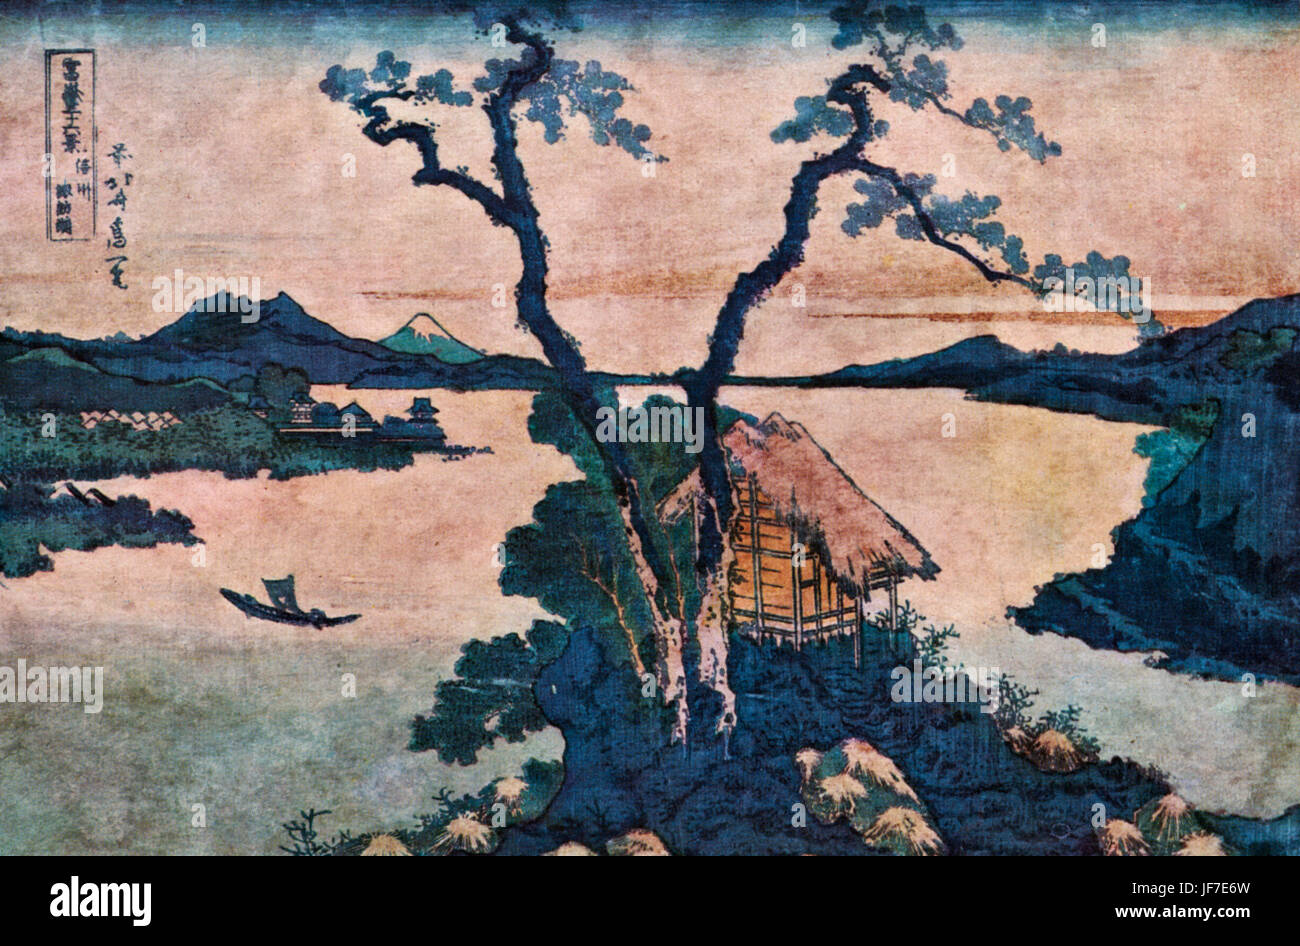 Paysage par Hokusai à partir de la série trente-six vues du Fuji. Artiste japonais. 1760-1849 Gravure sur bois. Classic style Japonais de la peinture. Banque D'Images